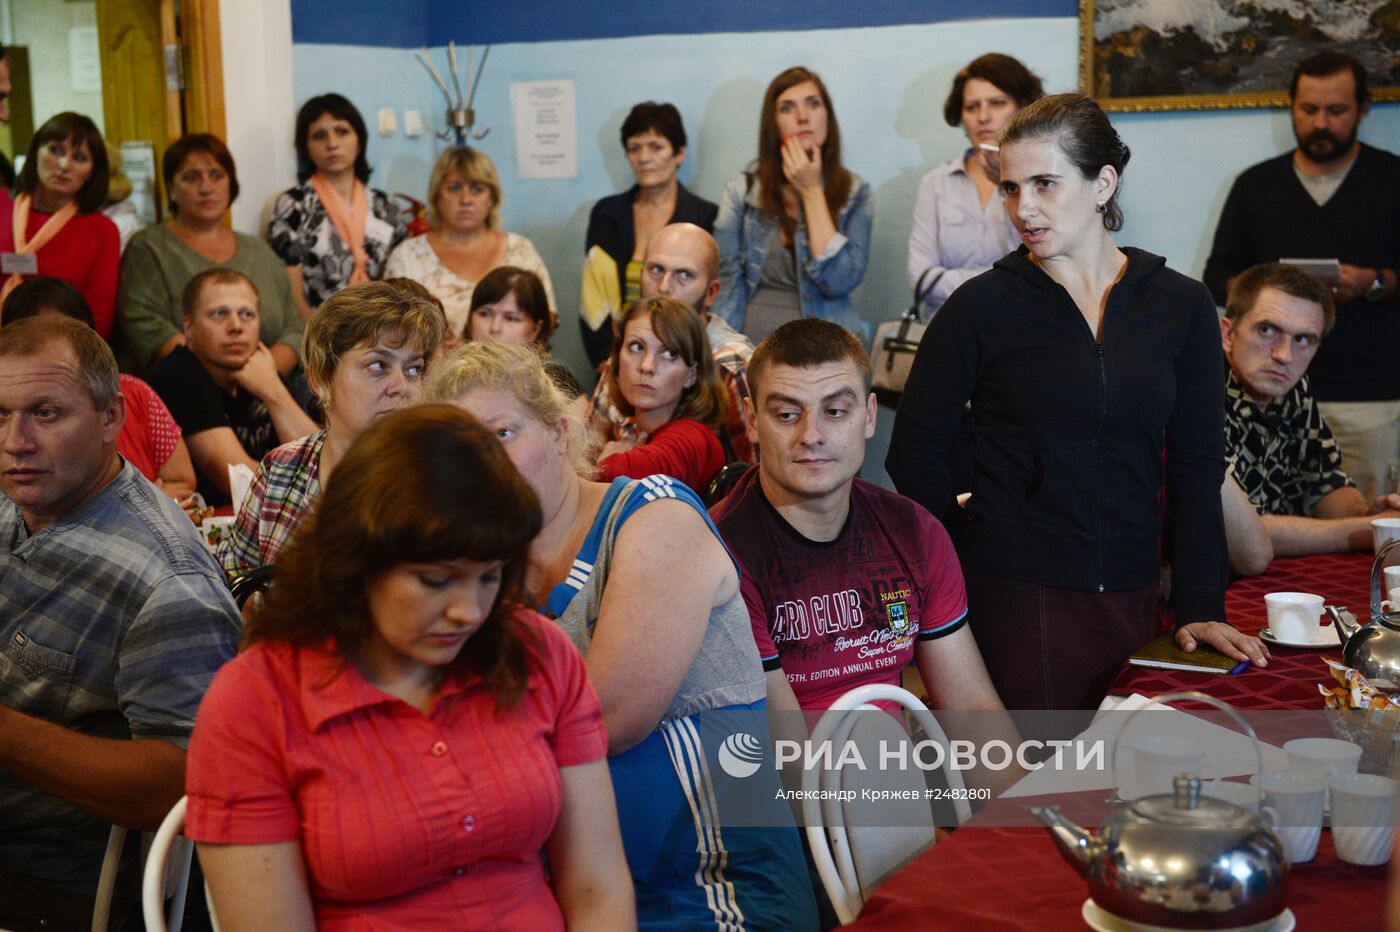 Пункт размещения украинских беженцев в Новосибирске